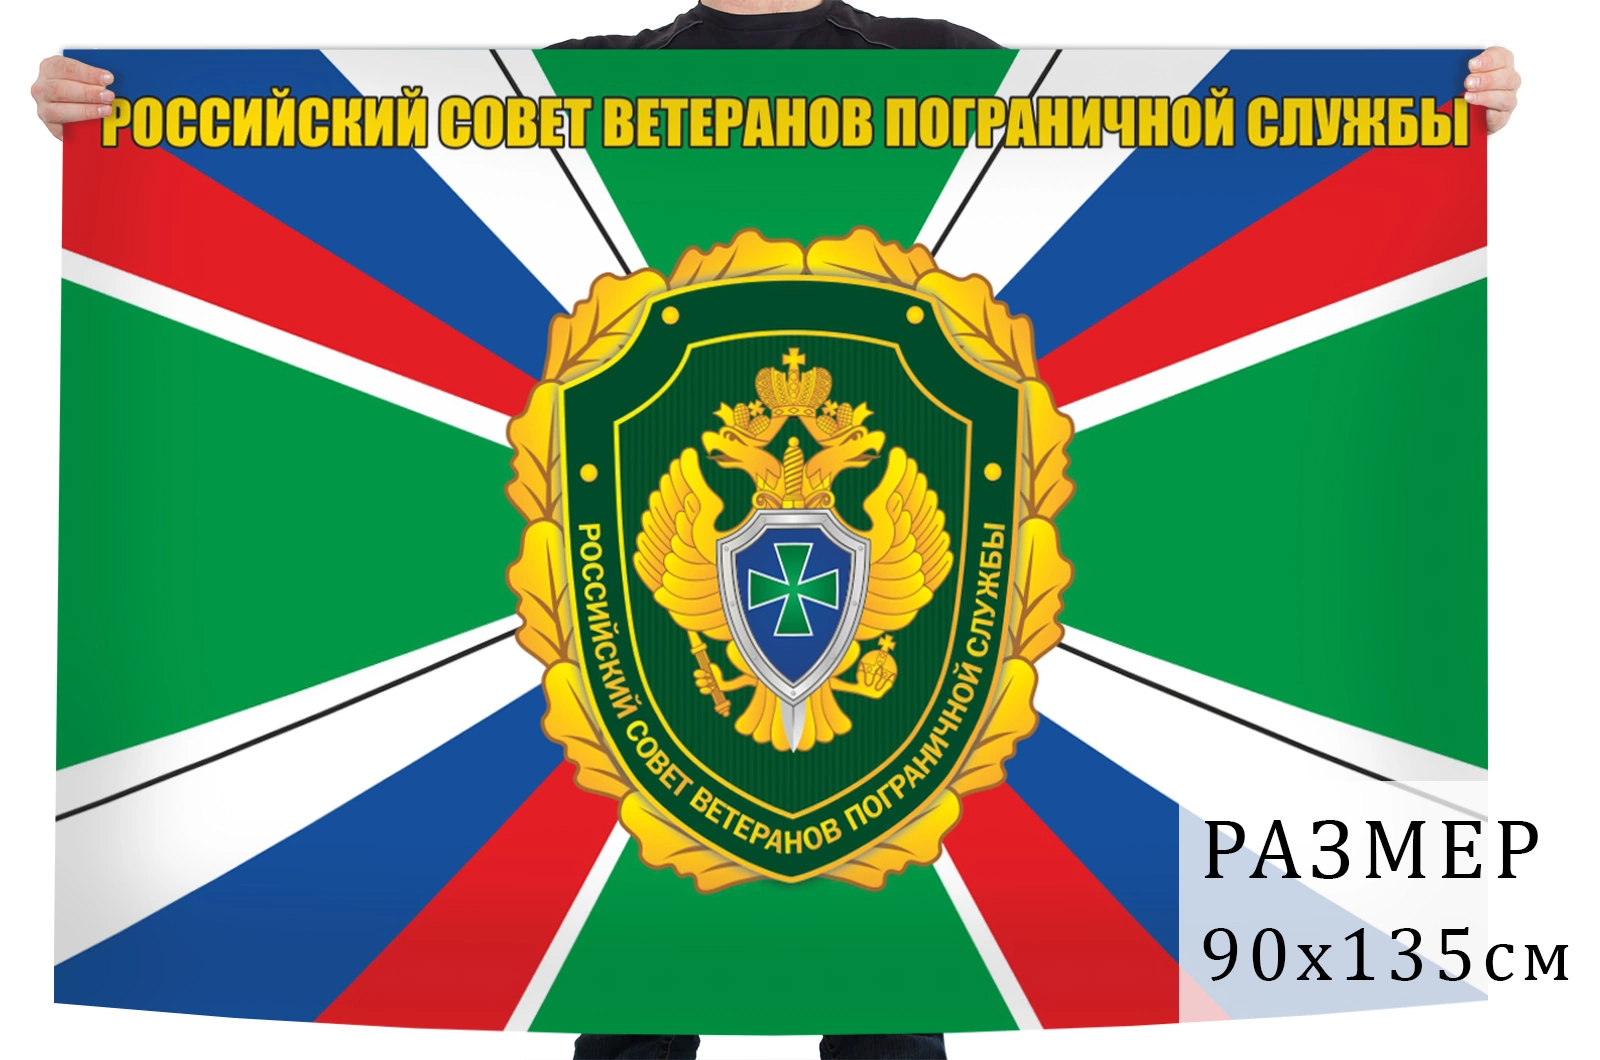 Организация пограничной службы. Российский совет ветеранов пограничной службы.